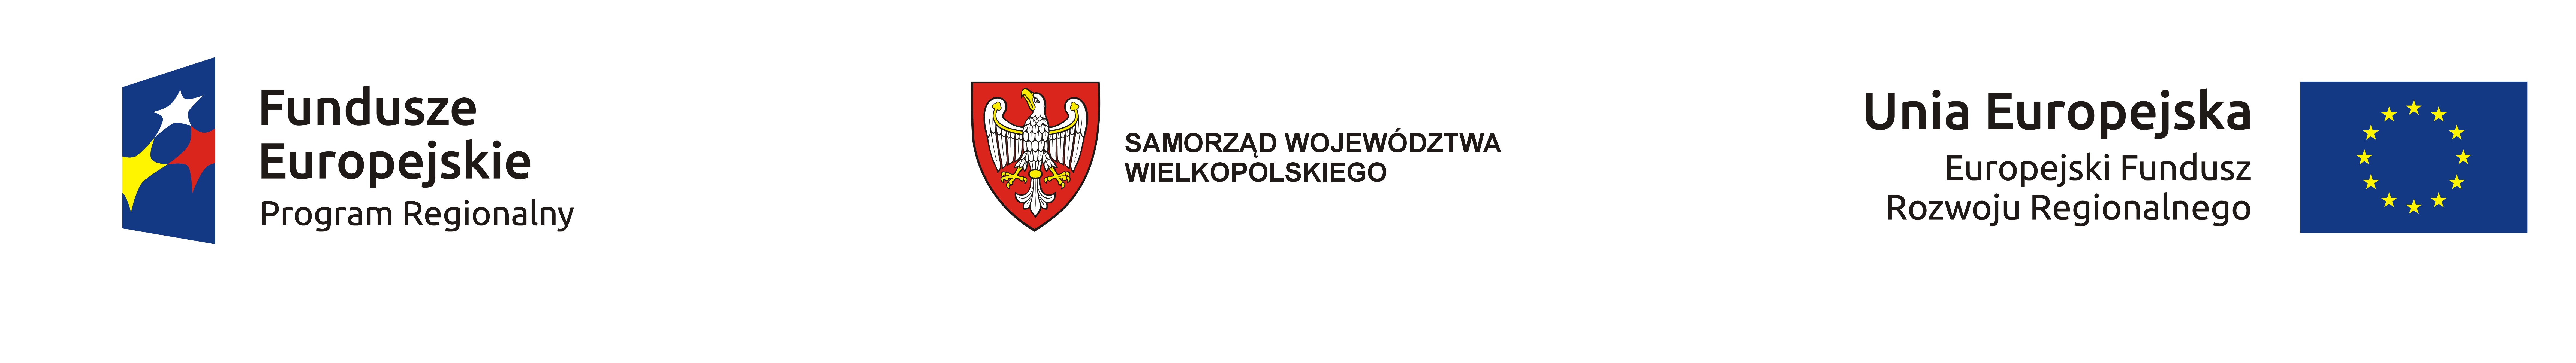 oznakowanie znakiem Funduszu Europejskiego, Godłem Samorządu Województwa Wielkopolskiego i flaga Unii Europejskiej - Europejski Fundusz Rozwoju Regionalnego